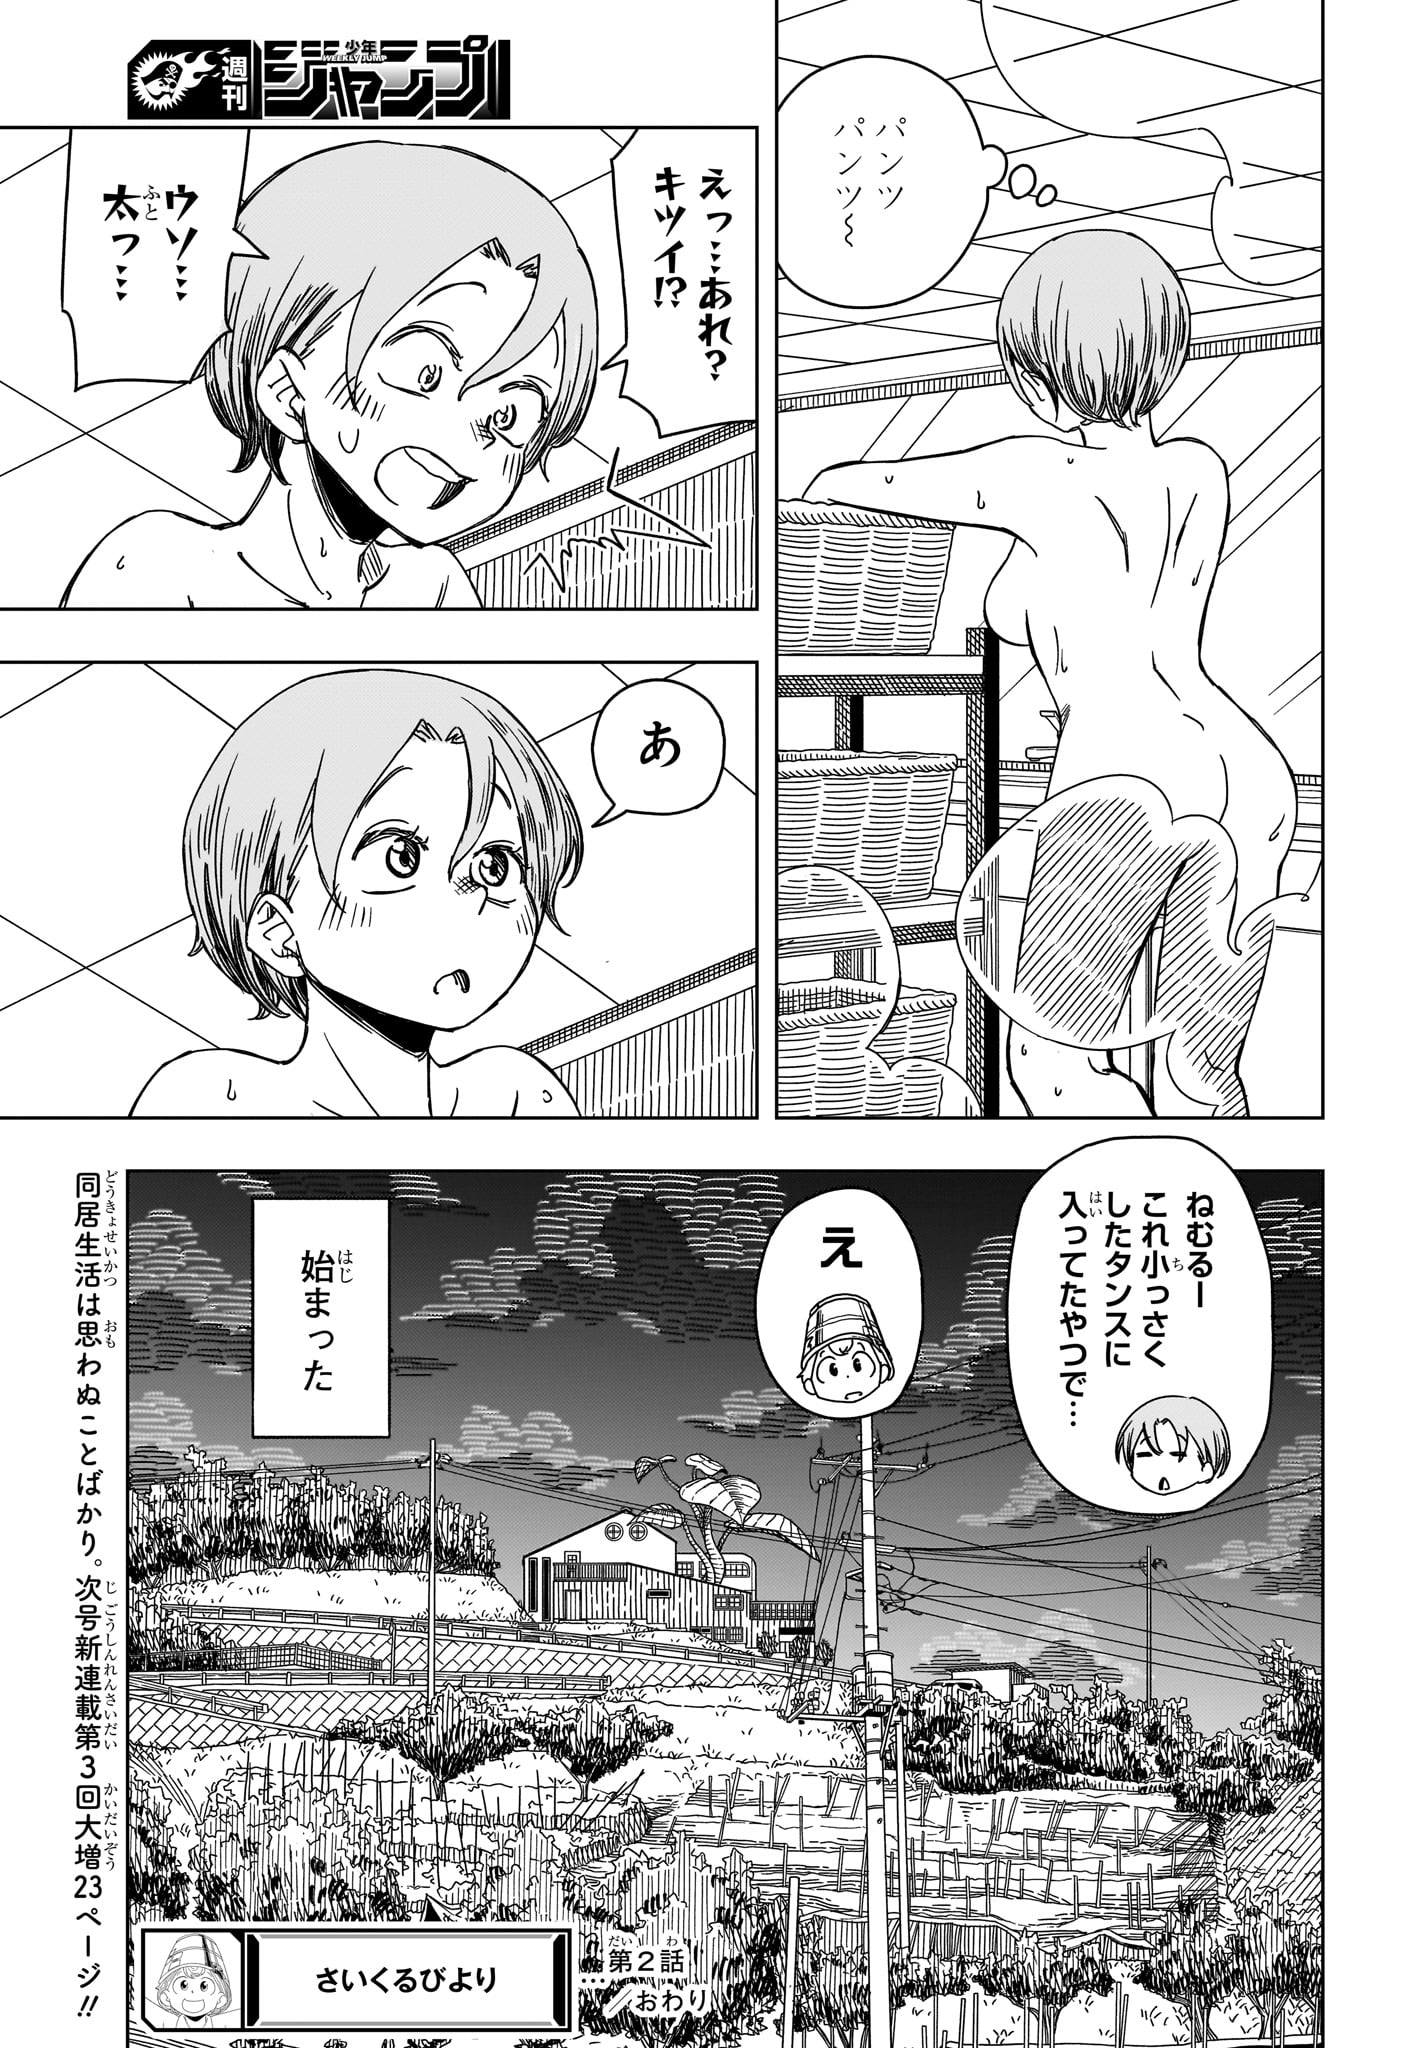 Saikuru Biyori - Chapter 2 - Page 25